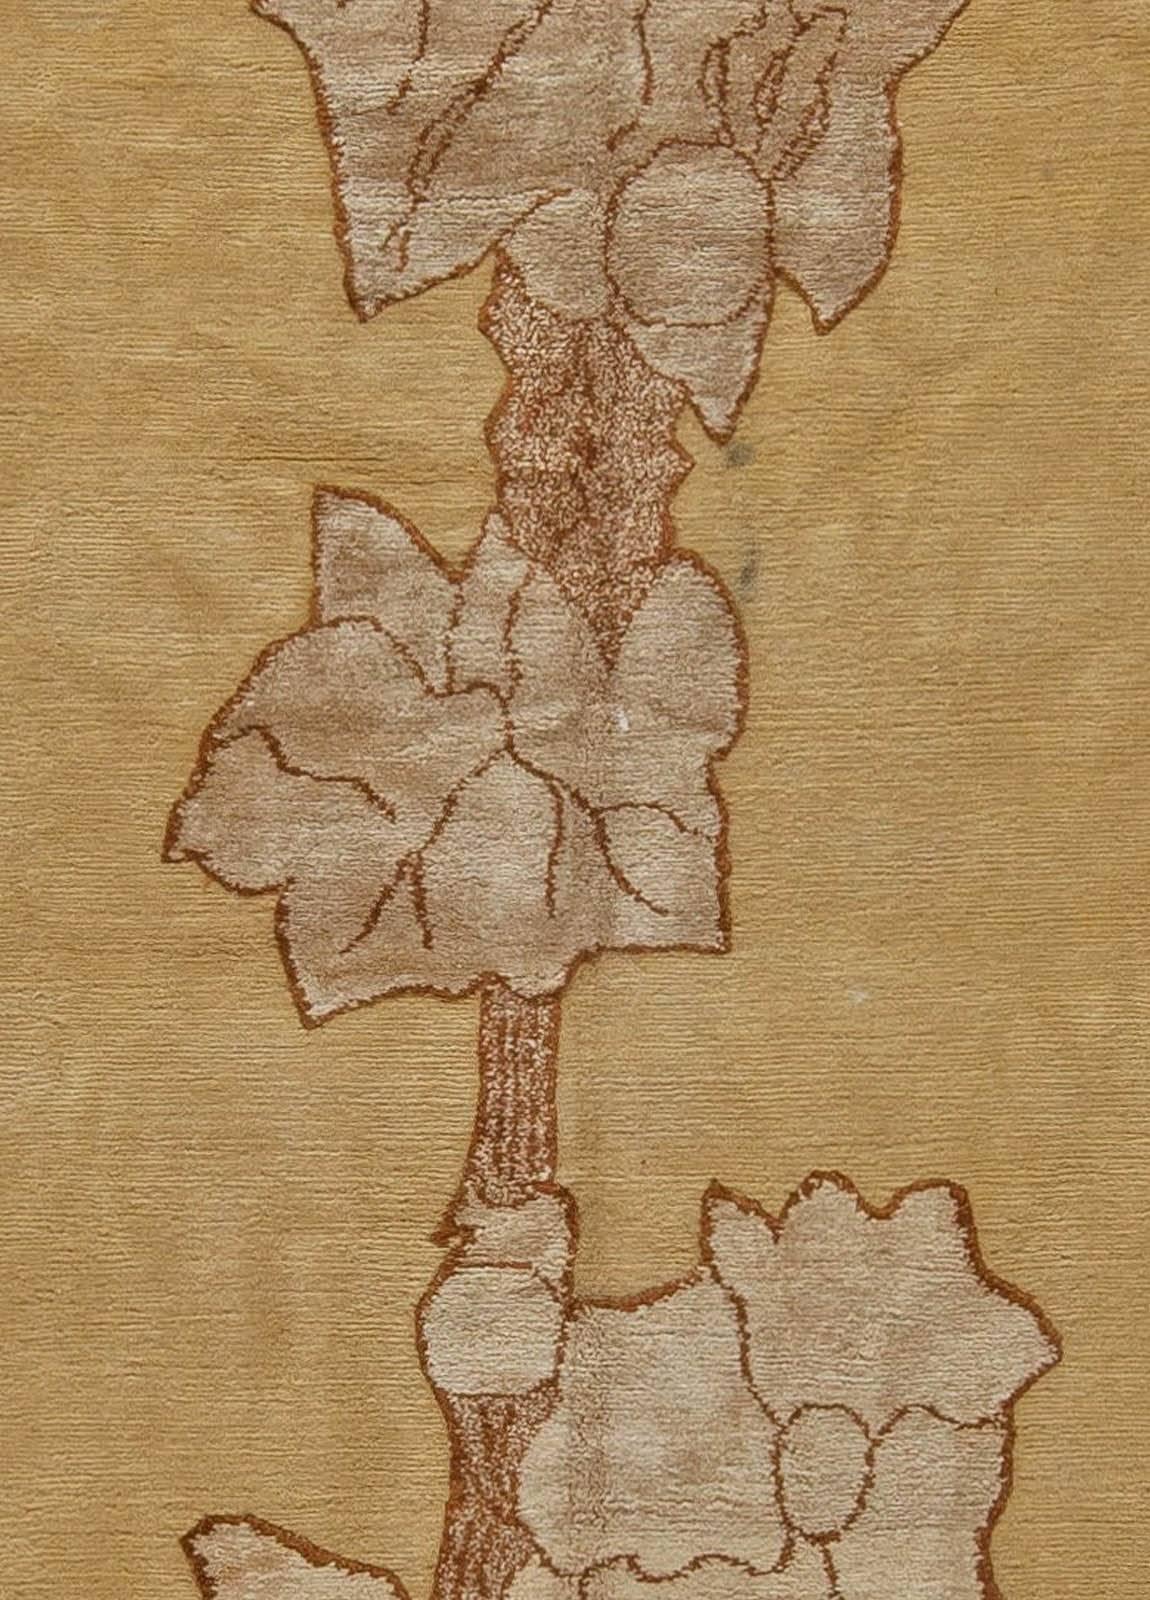 Zeitgenössischer Napa Vines handgefertigter Wollteppich von Doris Leslie Blau.
Größe: 8'0